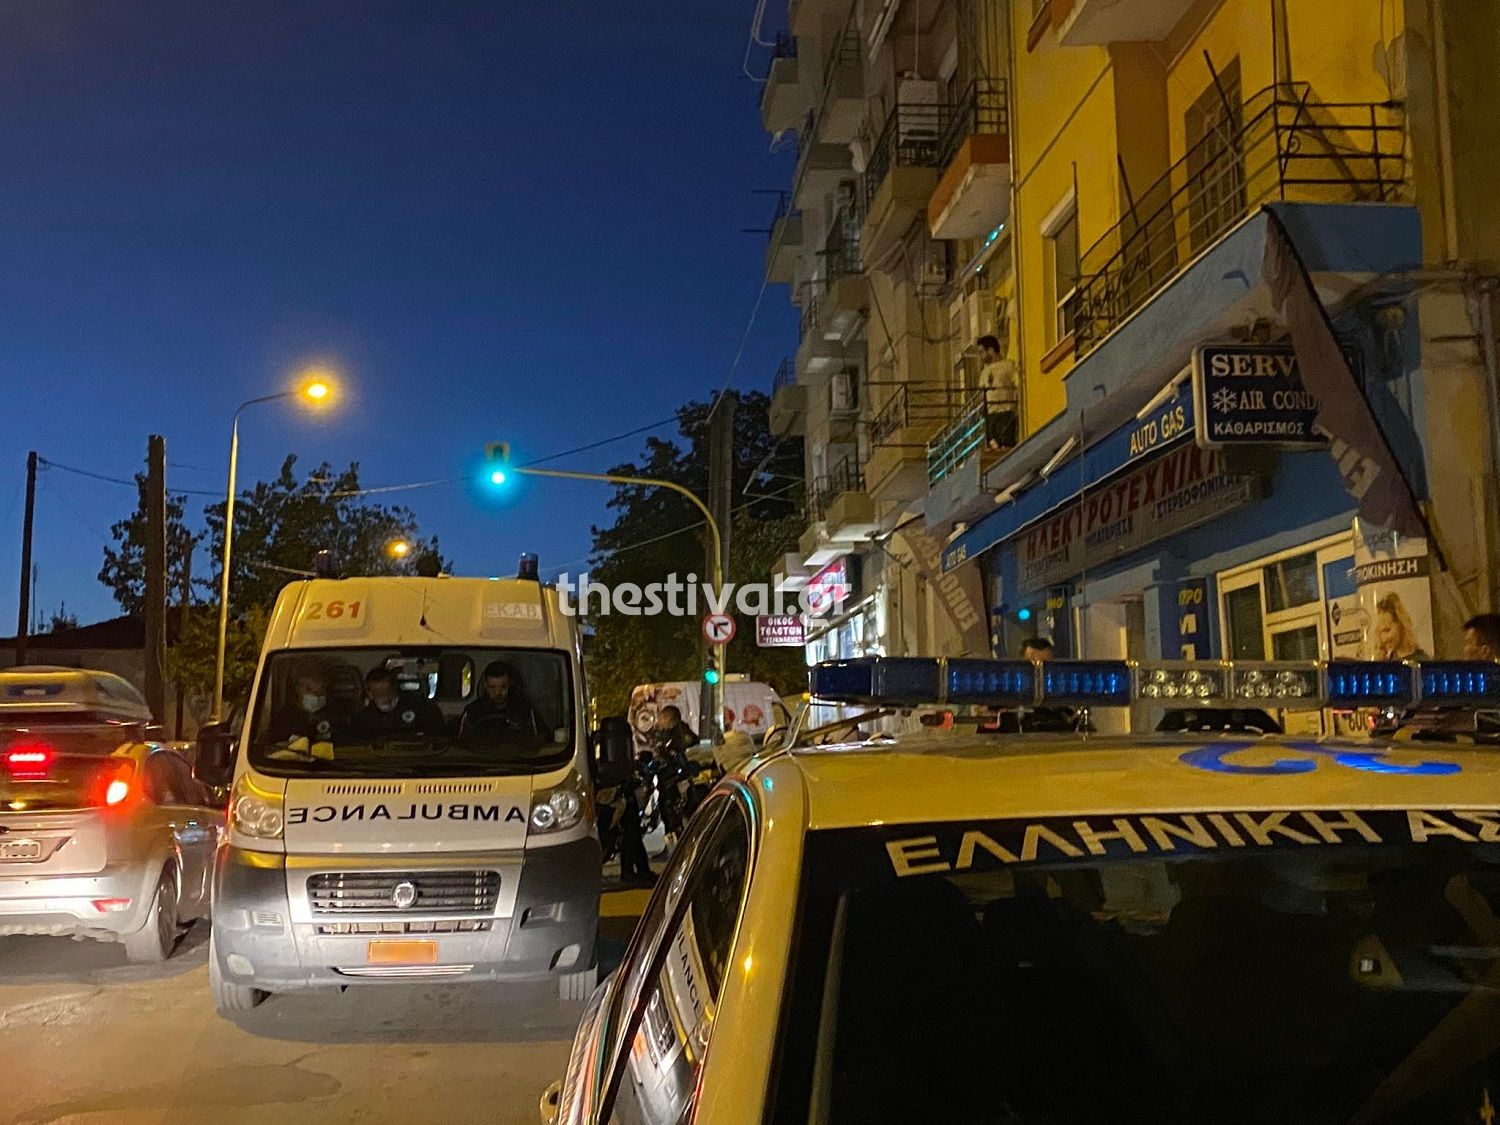 ΠΡΙΝ ΑΠΟ ΛΙΓΟ: Νεκρός 45χρονος που έπεσε από τον τέταρτο όροφο πολυκατοικίας στη Θεσσαλονίκη